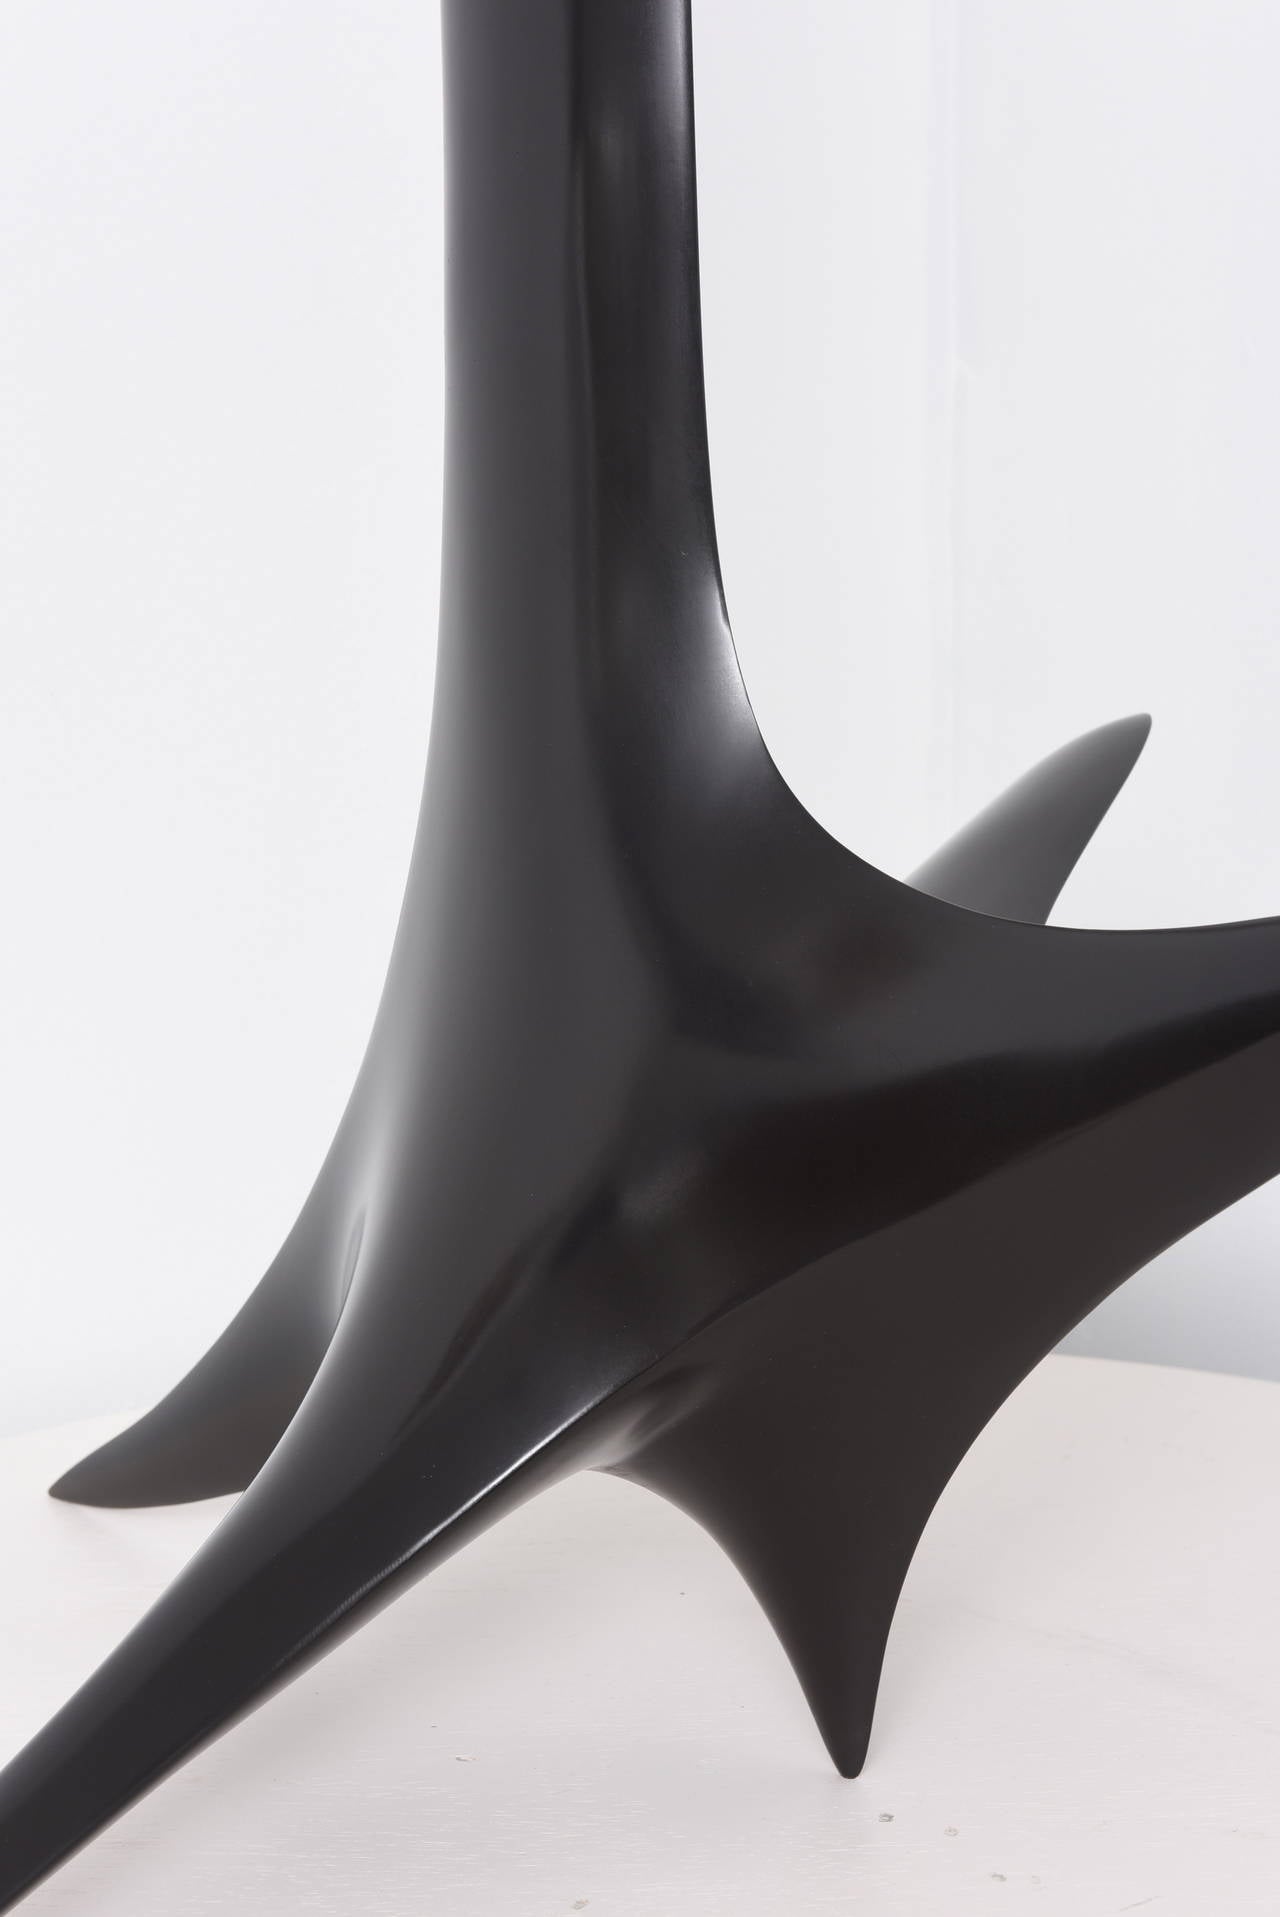 Icare est une grande sculpture abstraite à la patine noire, réalisée par Patrice Breteau, un artiste contemporain français. De forme très élancée, cette sculpture en bronze est disponible dans différentes patines.

Selon le mythe grec d'